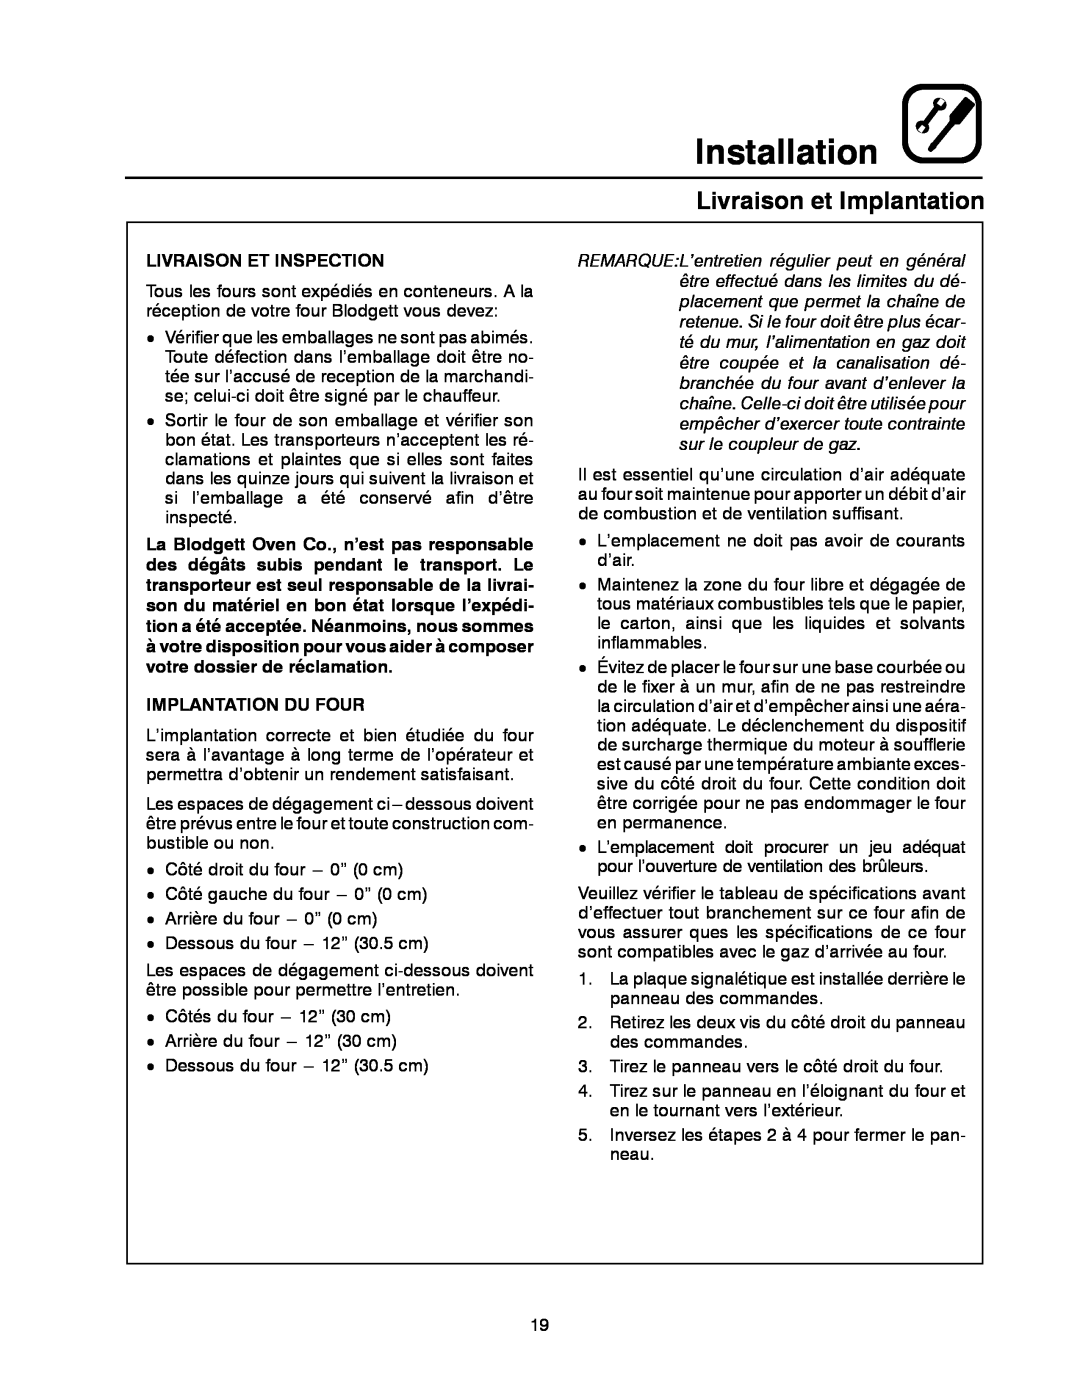 Blodgett XR8-G manual Livraison et Implantation, Installation, Livraison Et Inspection, Implantation Du Four 